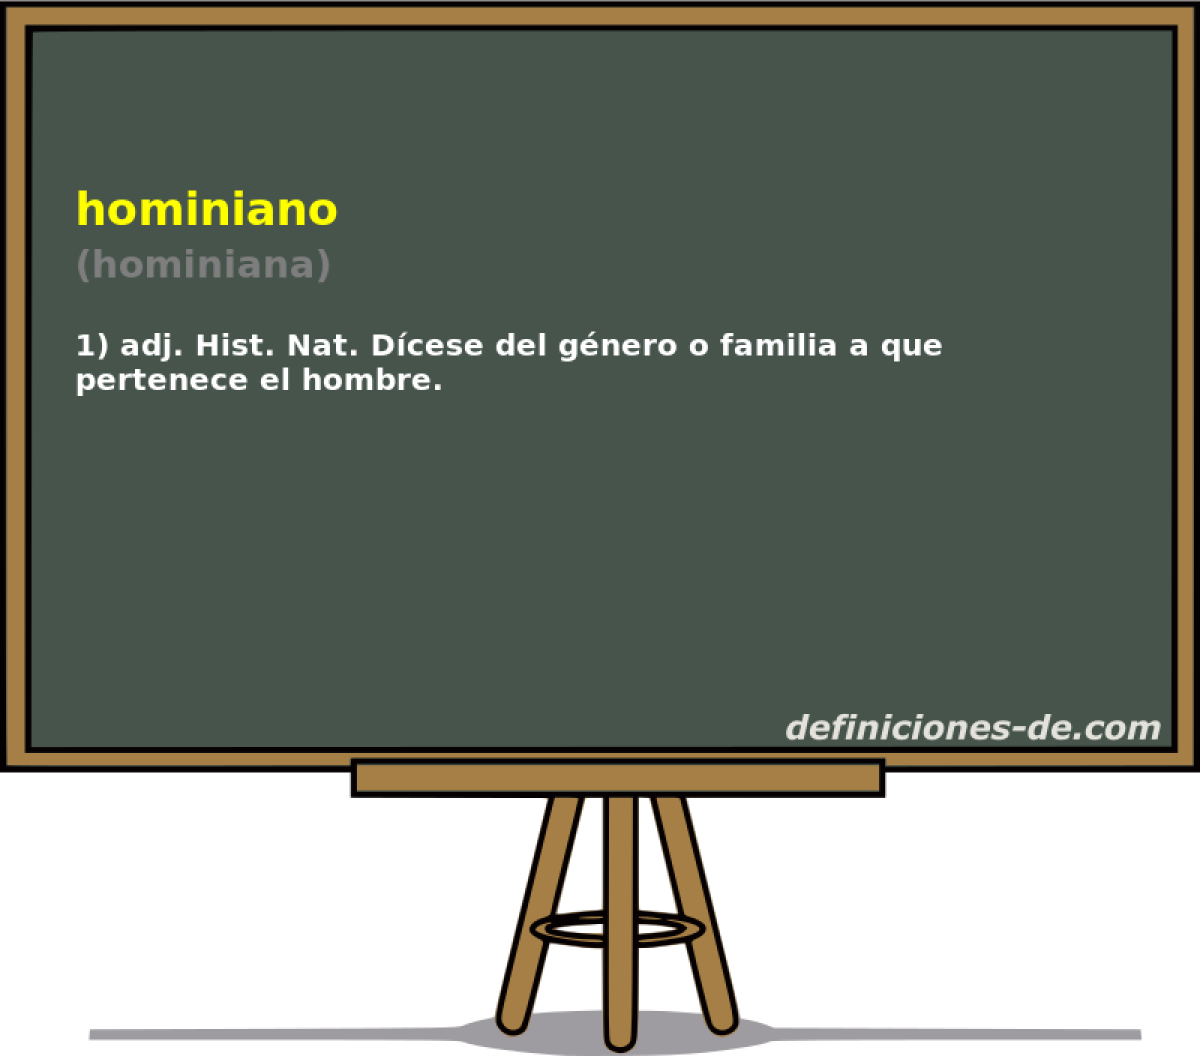 hominiano (hominiana)